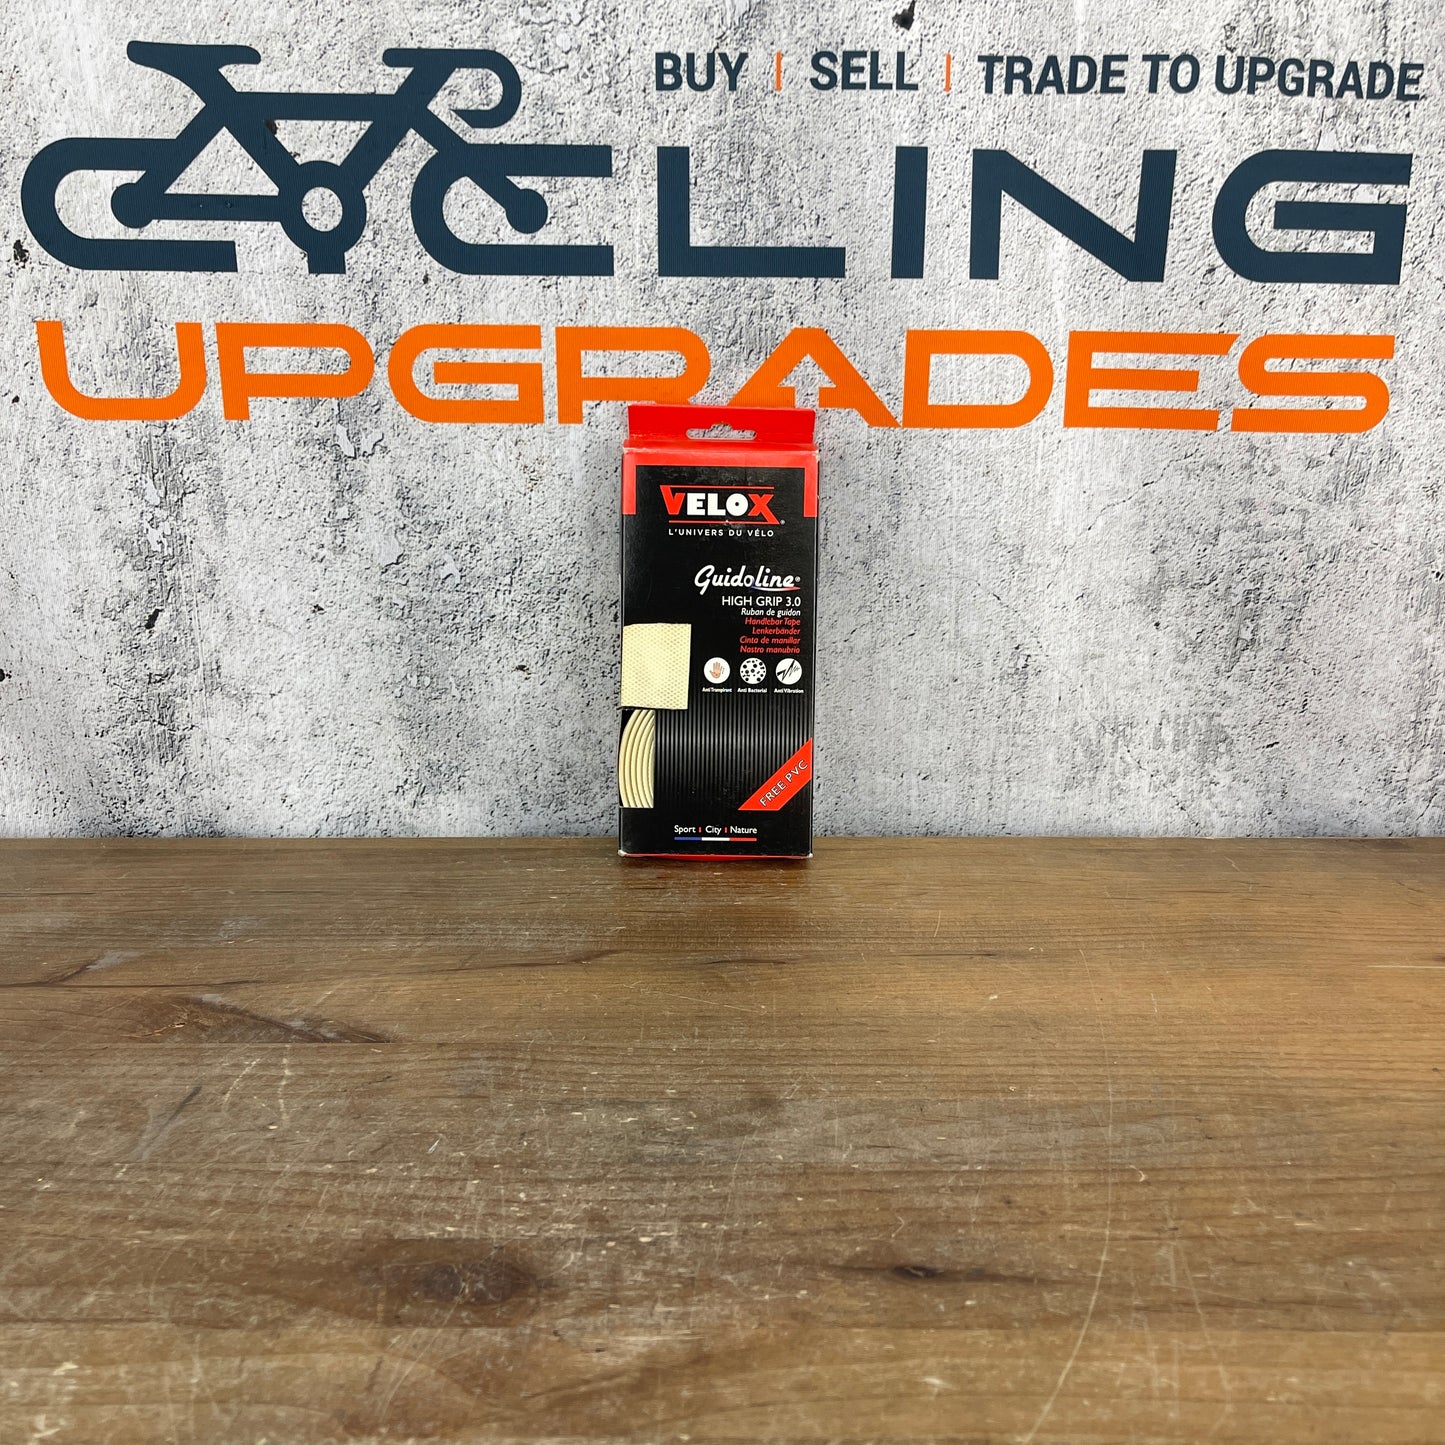 New! Velox Guidoline High Grip 3.0 Road Bike Handlebar Bar Tape Cycling White